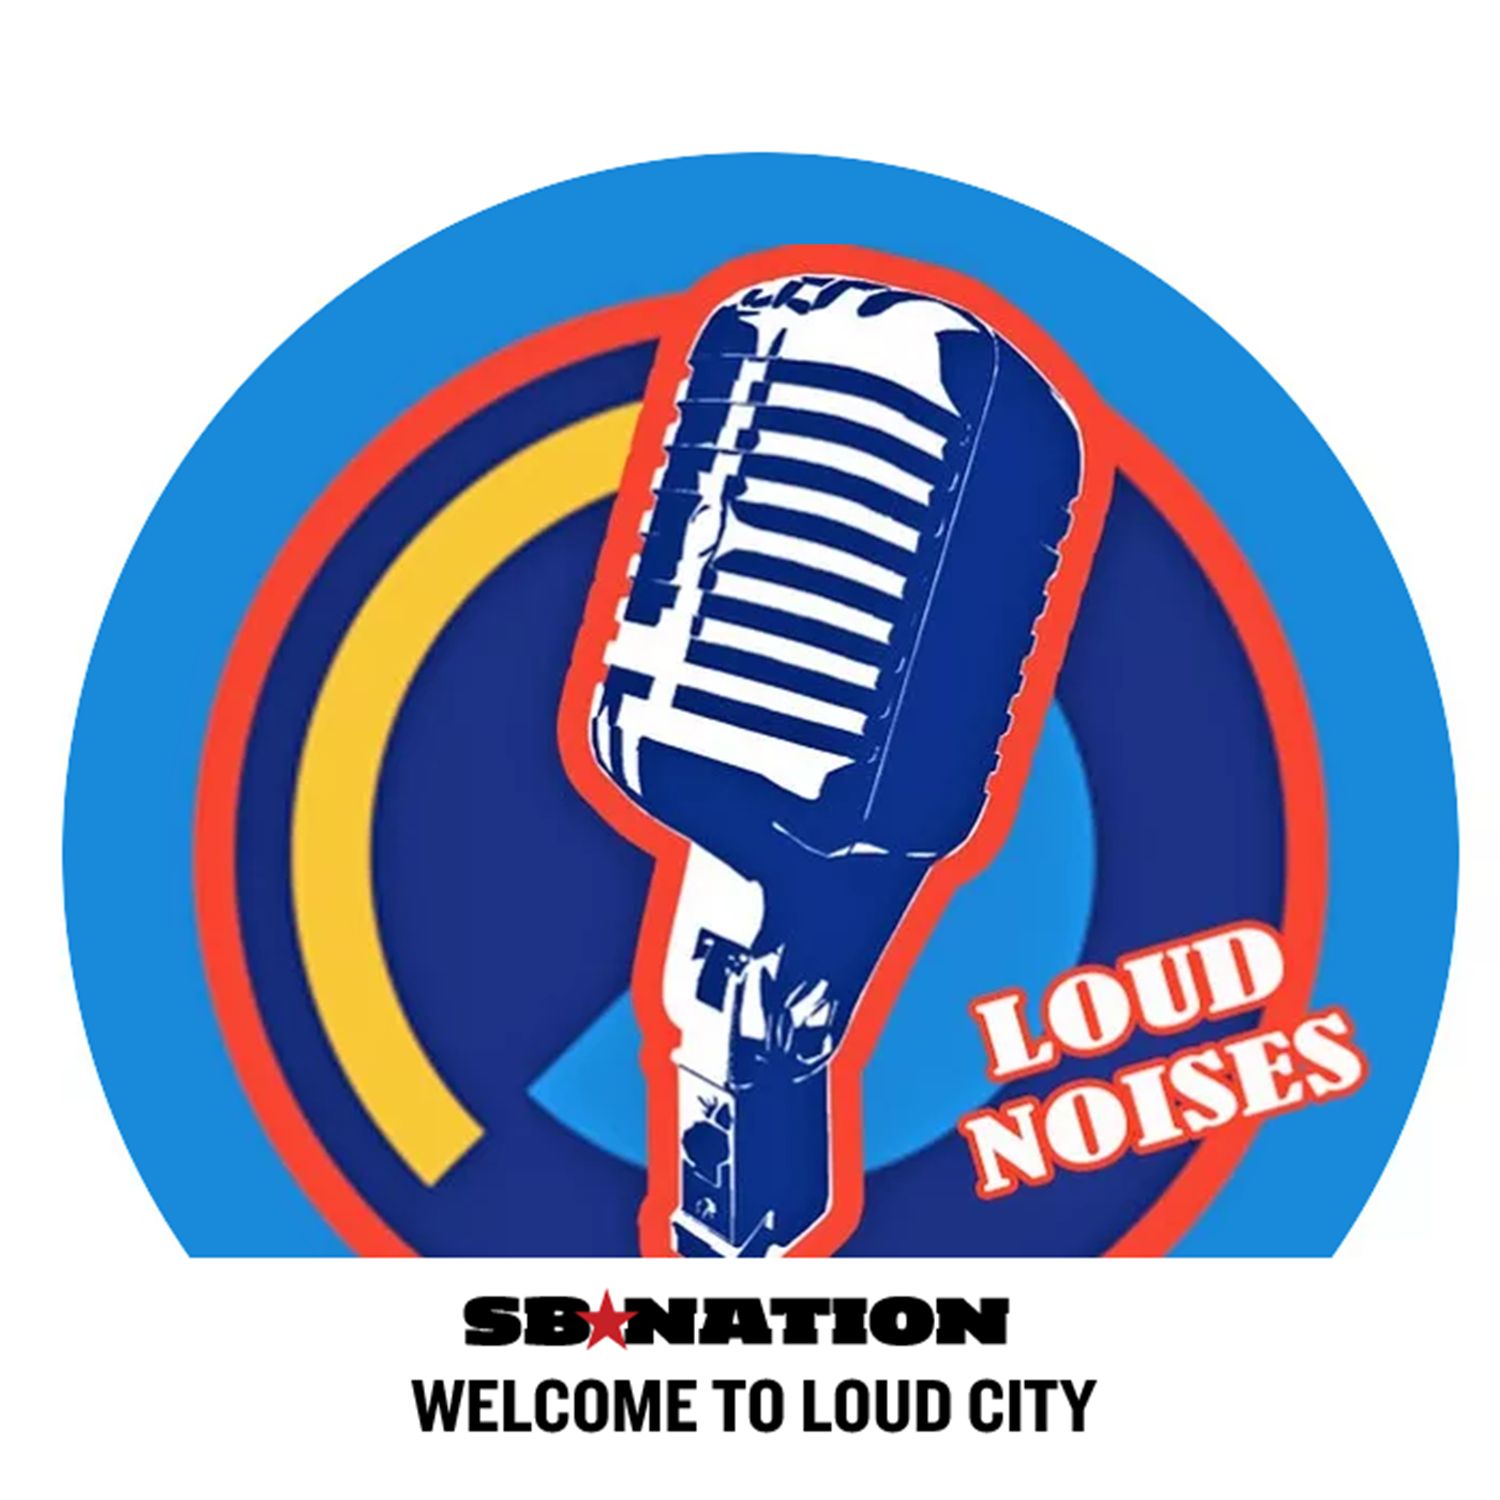 Loud Noises Episode 39